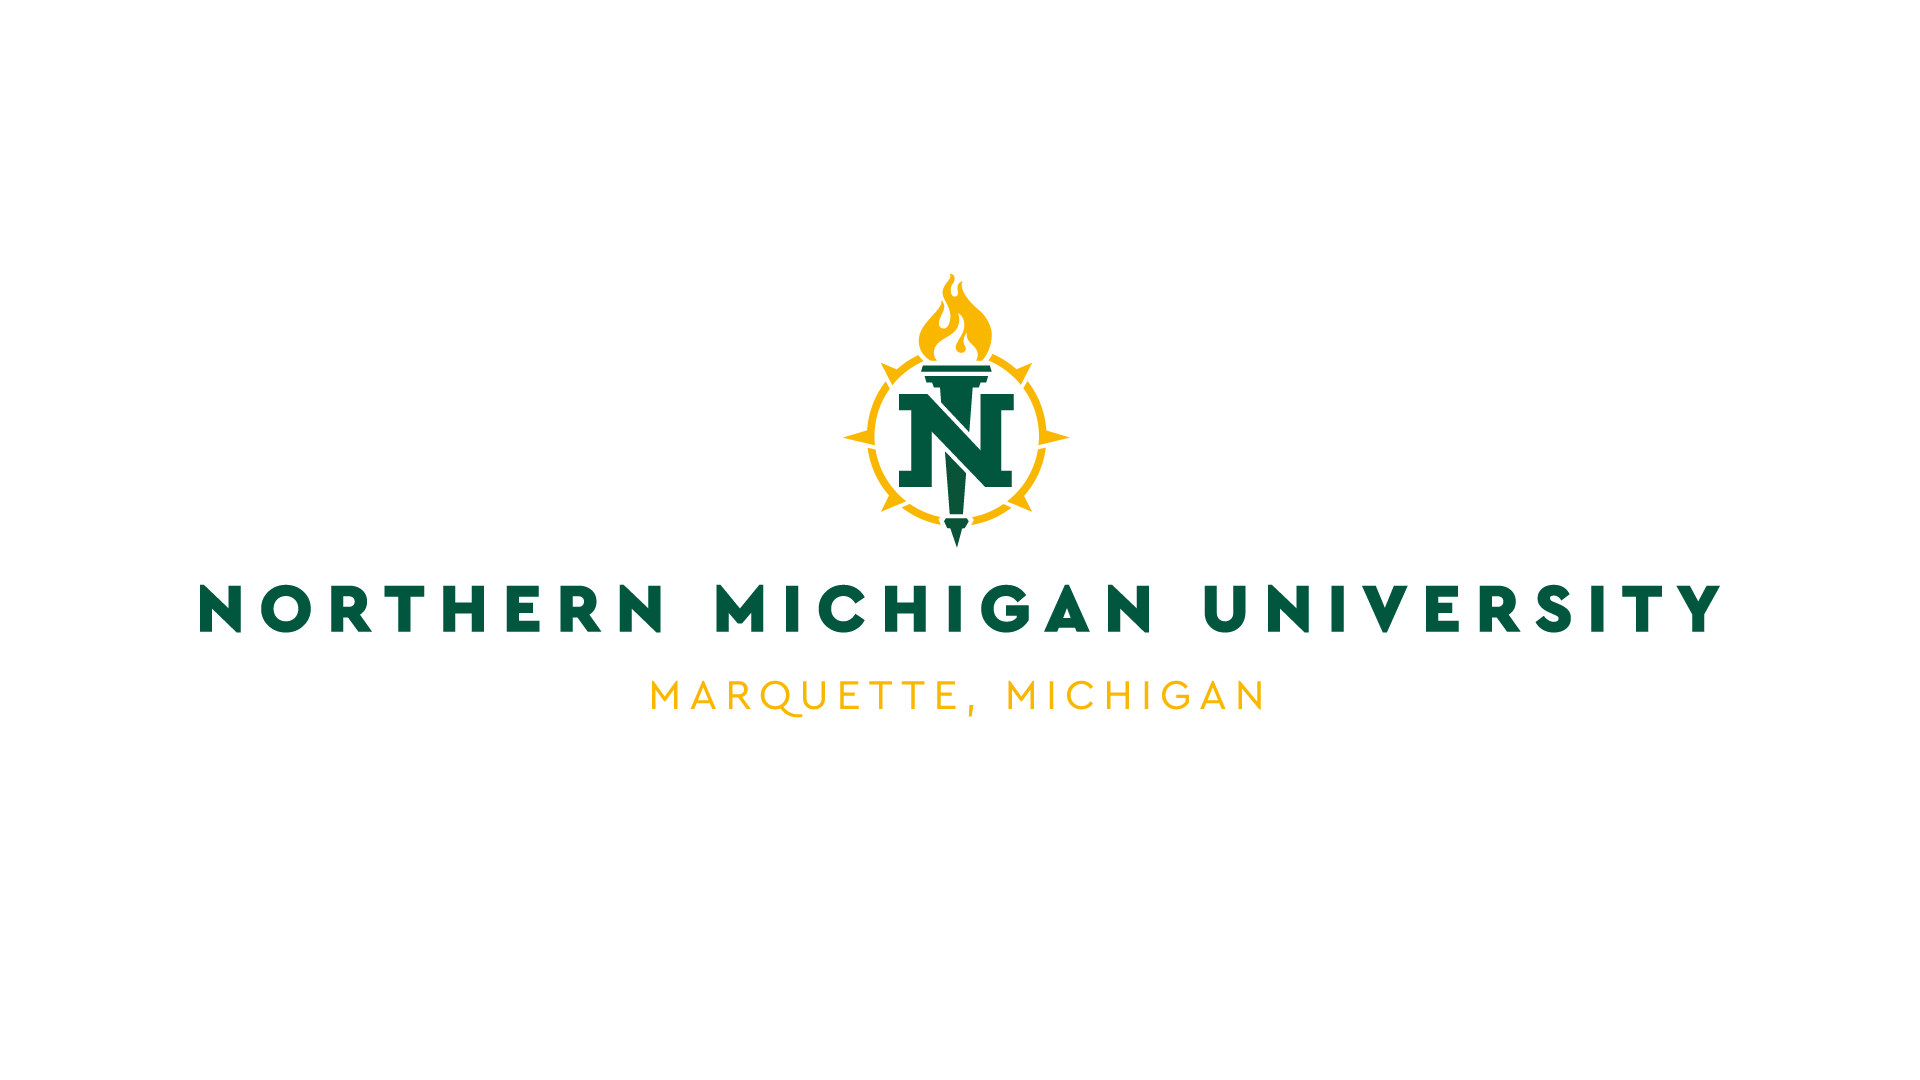 NMU Logo - Logo Guidelines | University Marketing and Communications at NMU